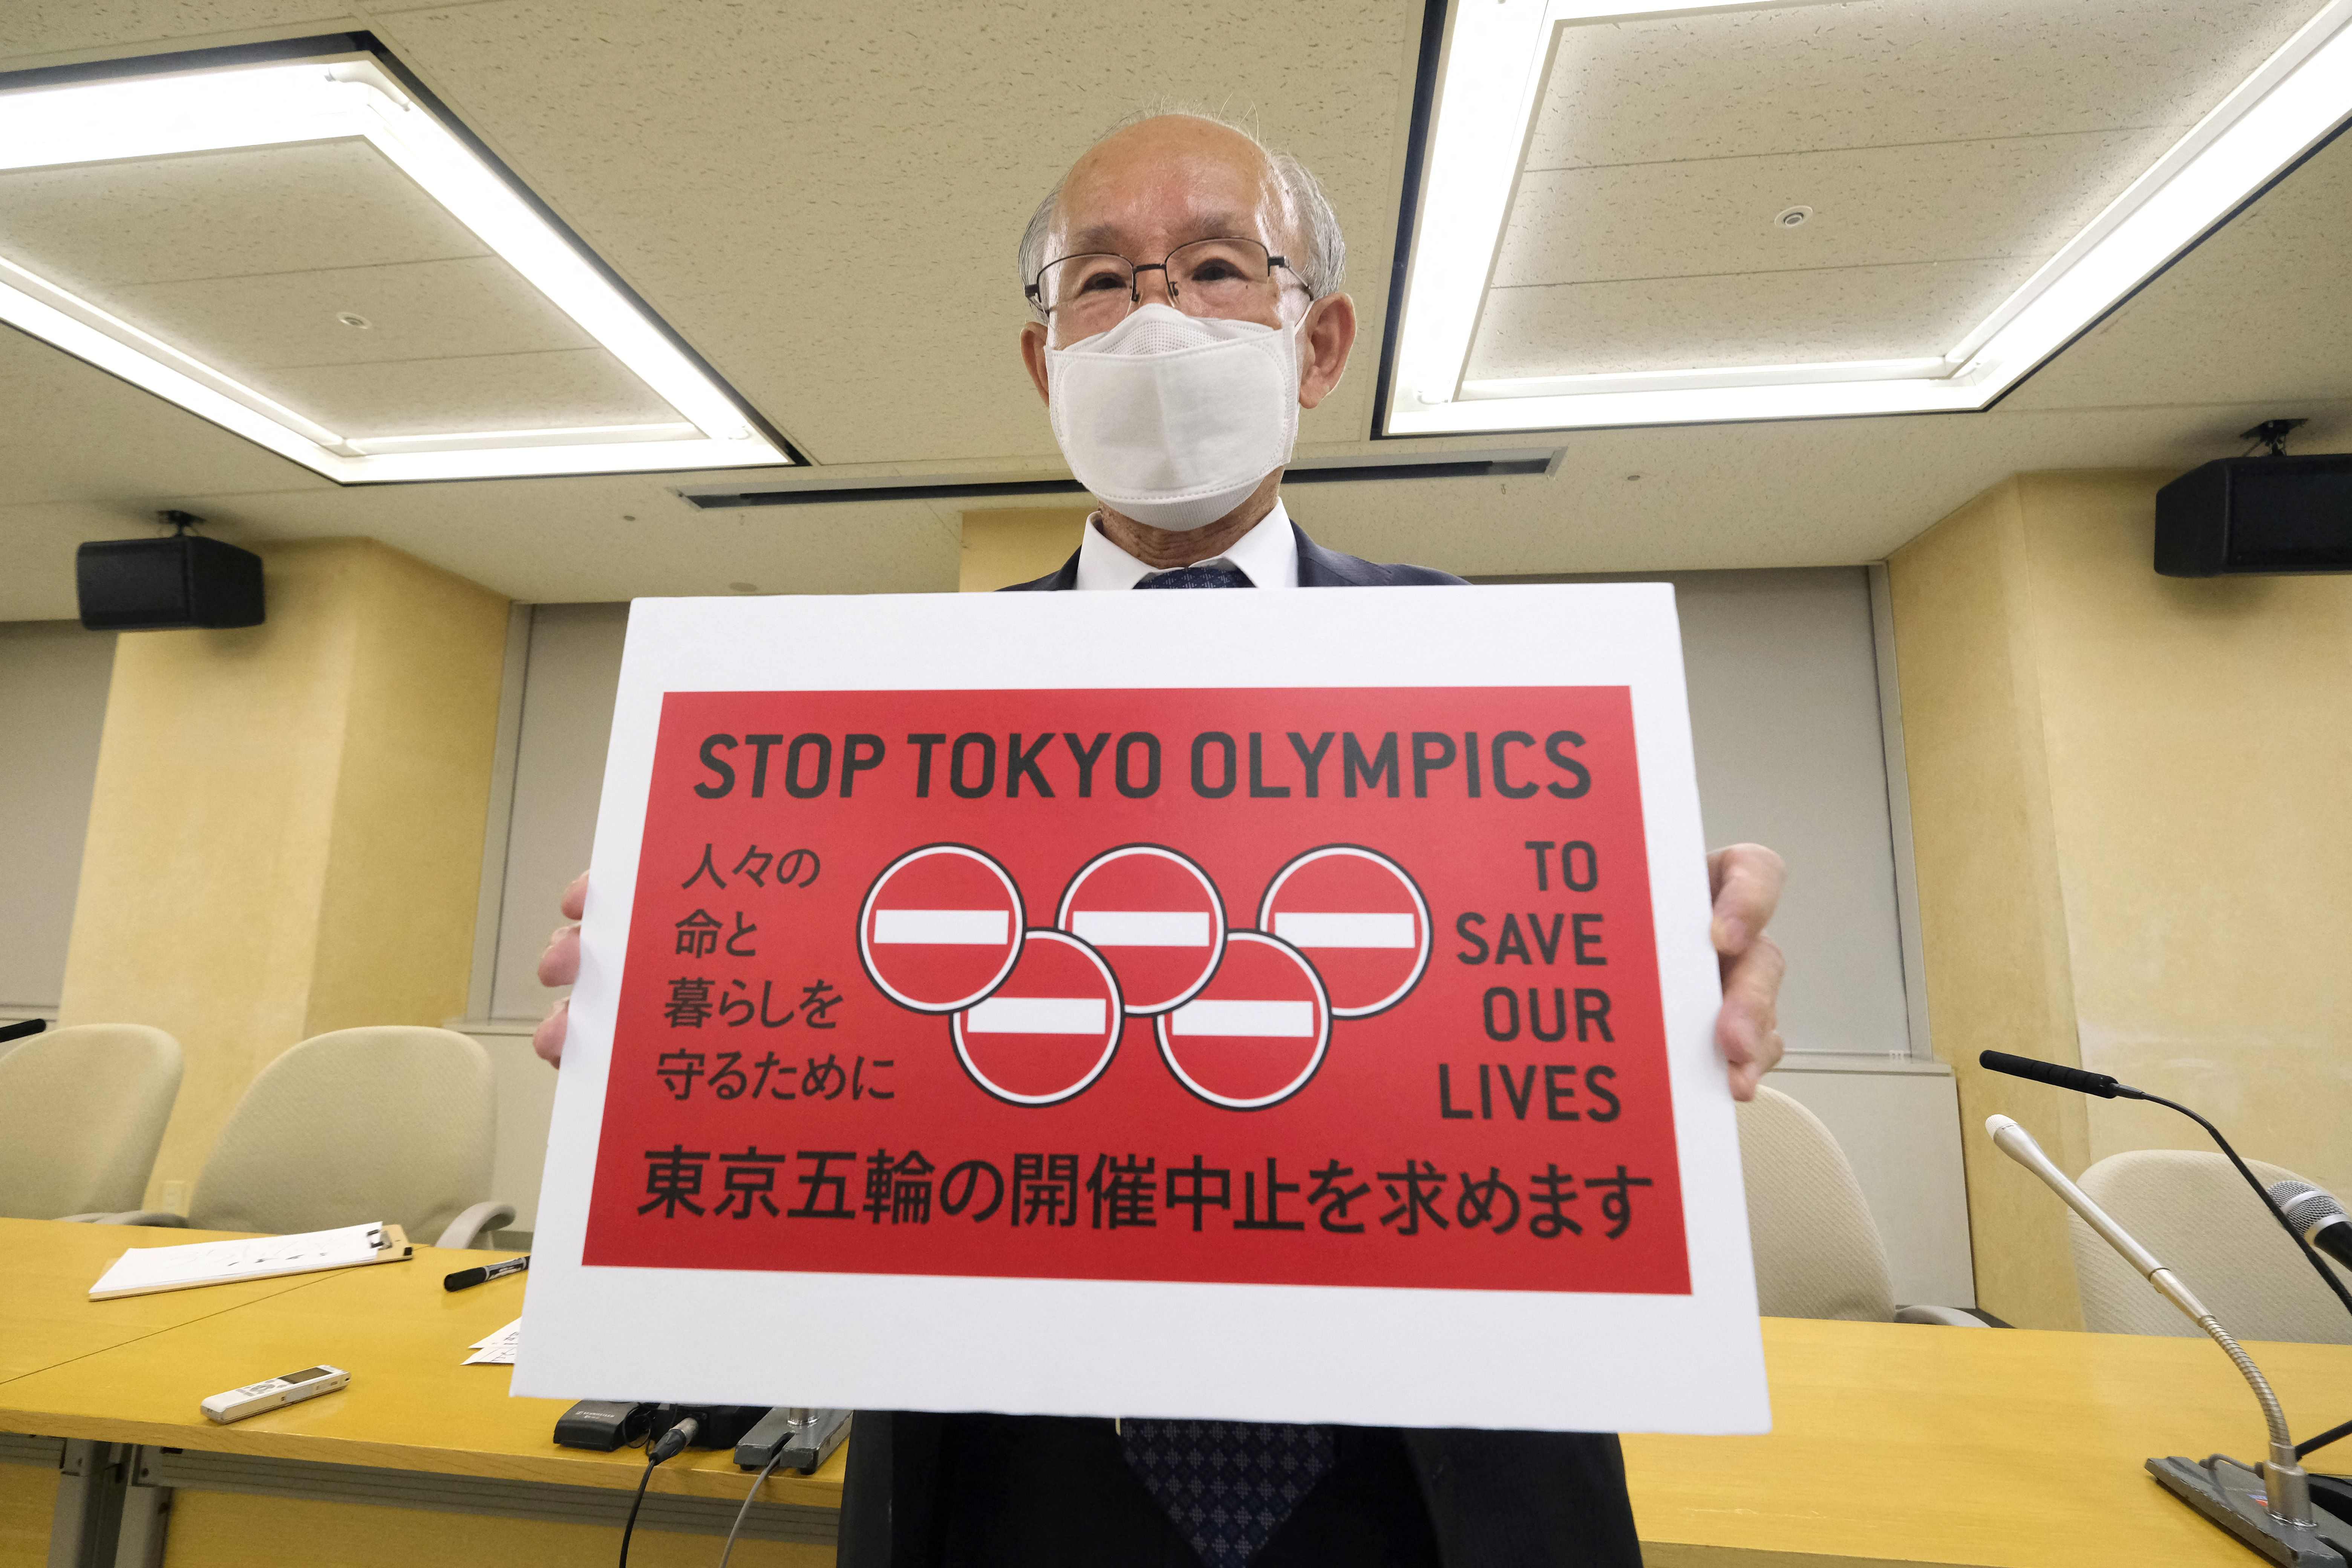 日本律师宇都宫健儿递交停办奥运请愿书，短时间内共35万人签名，他呼吁“停办东京奥运会”。（法新社照片）

